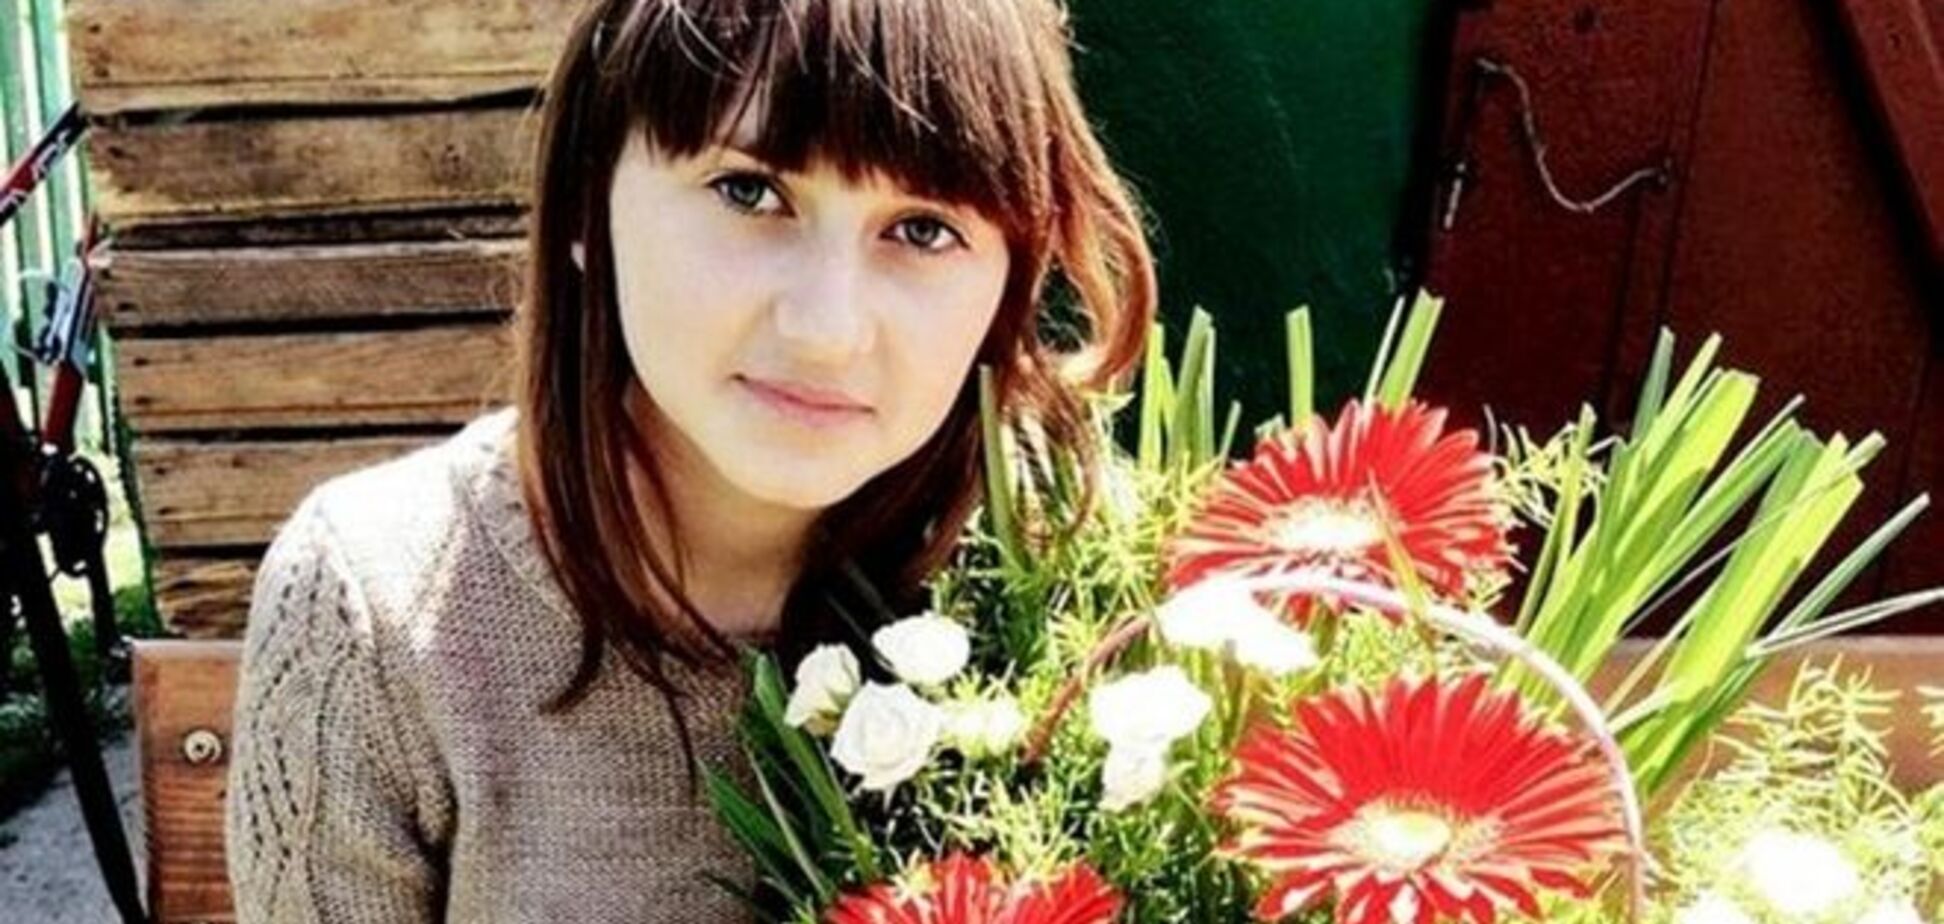 20 дней взаперти. Задержаны похитители 16-летней девушки из Коломыи: видео МВД